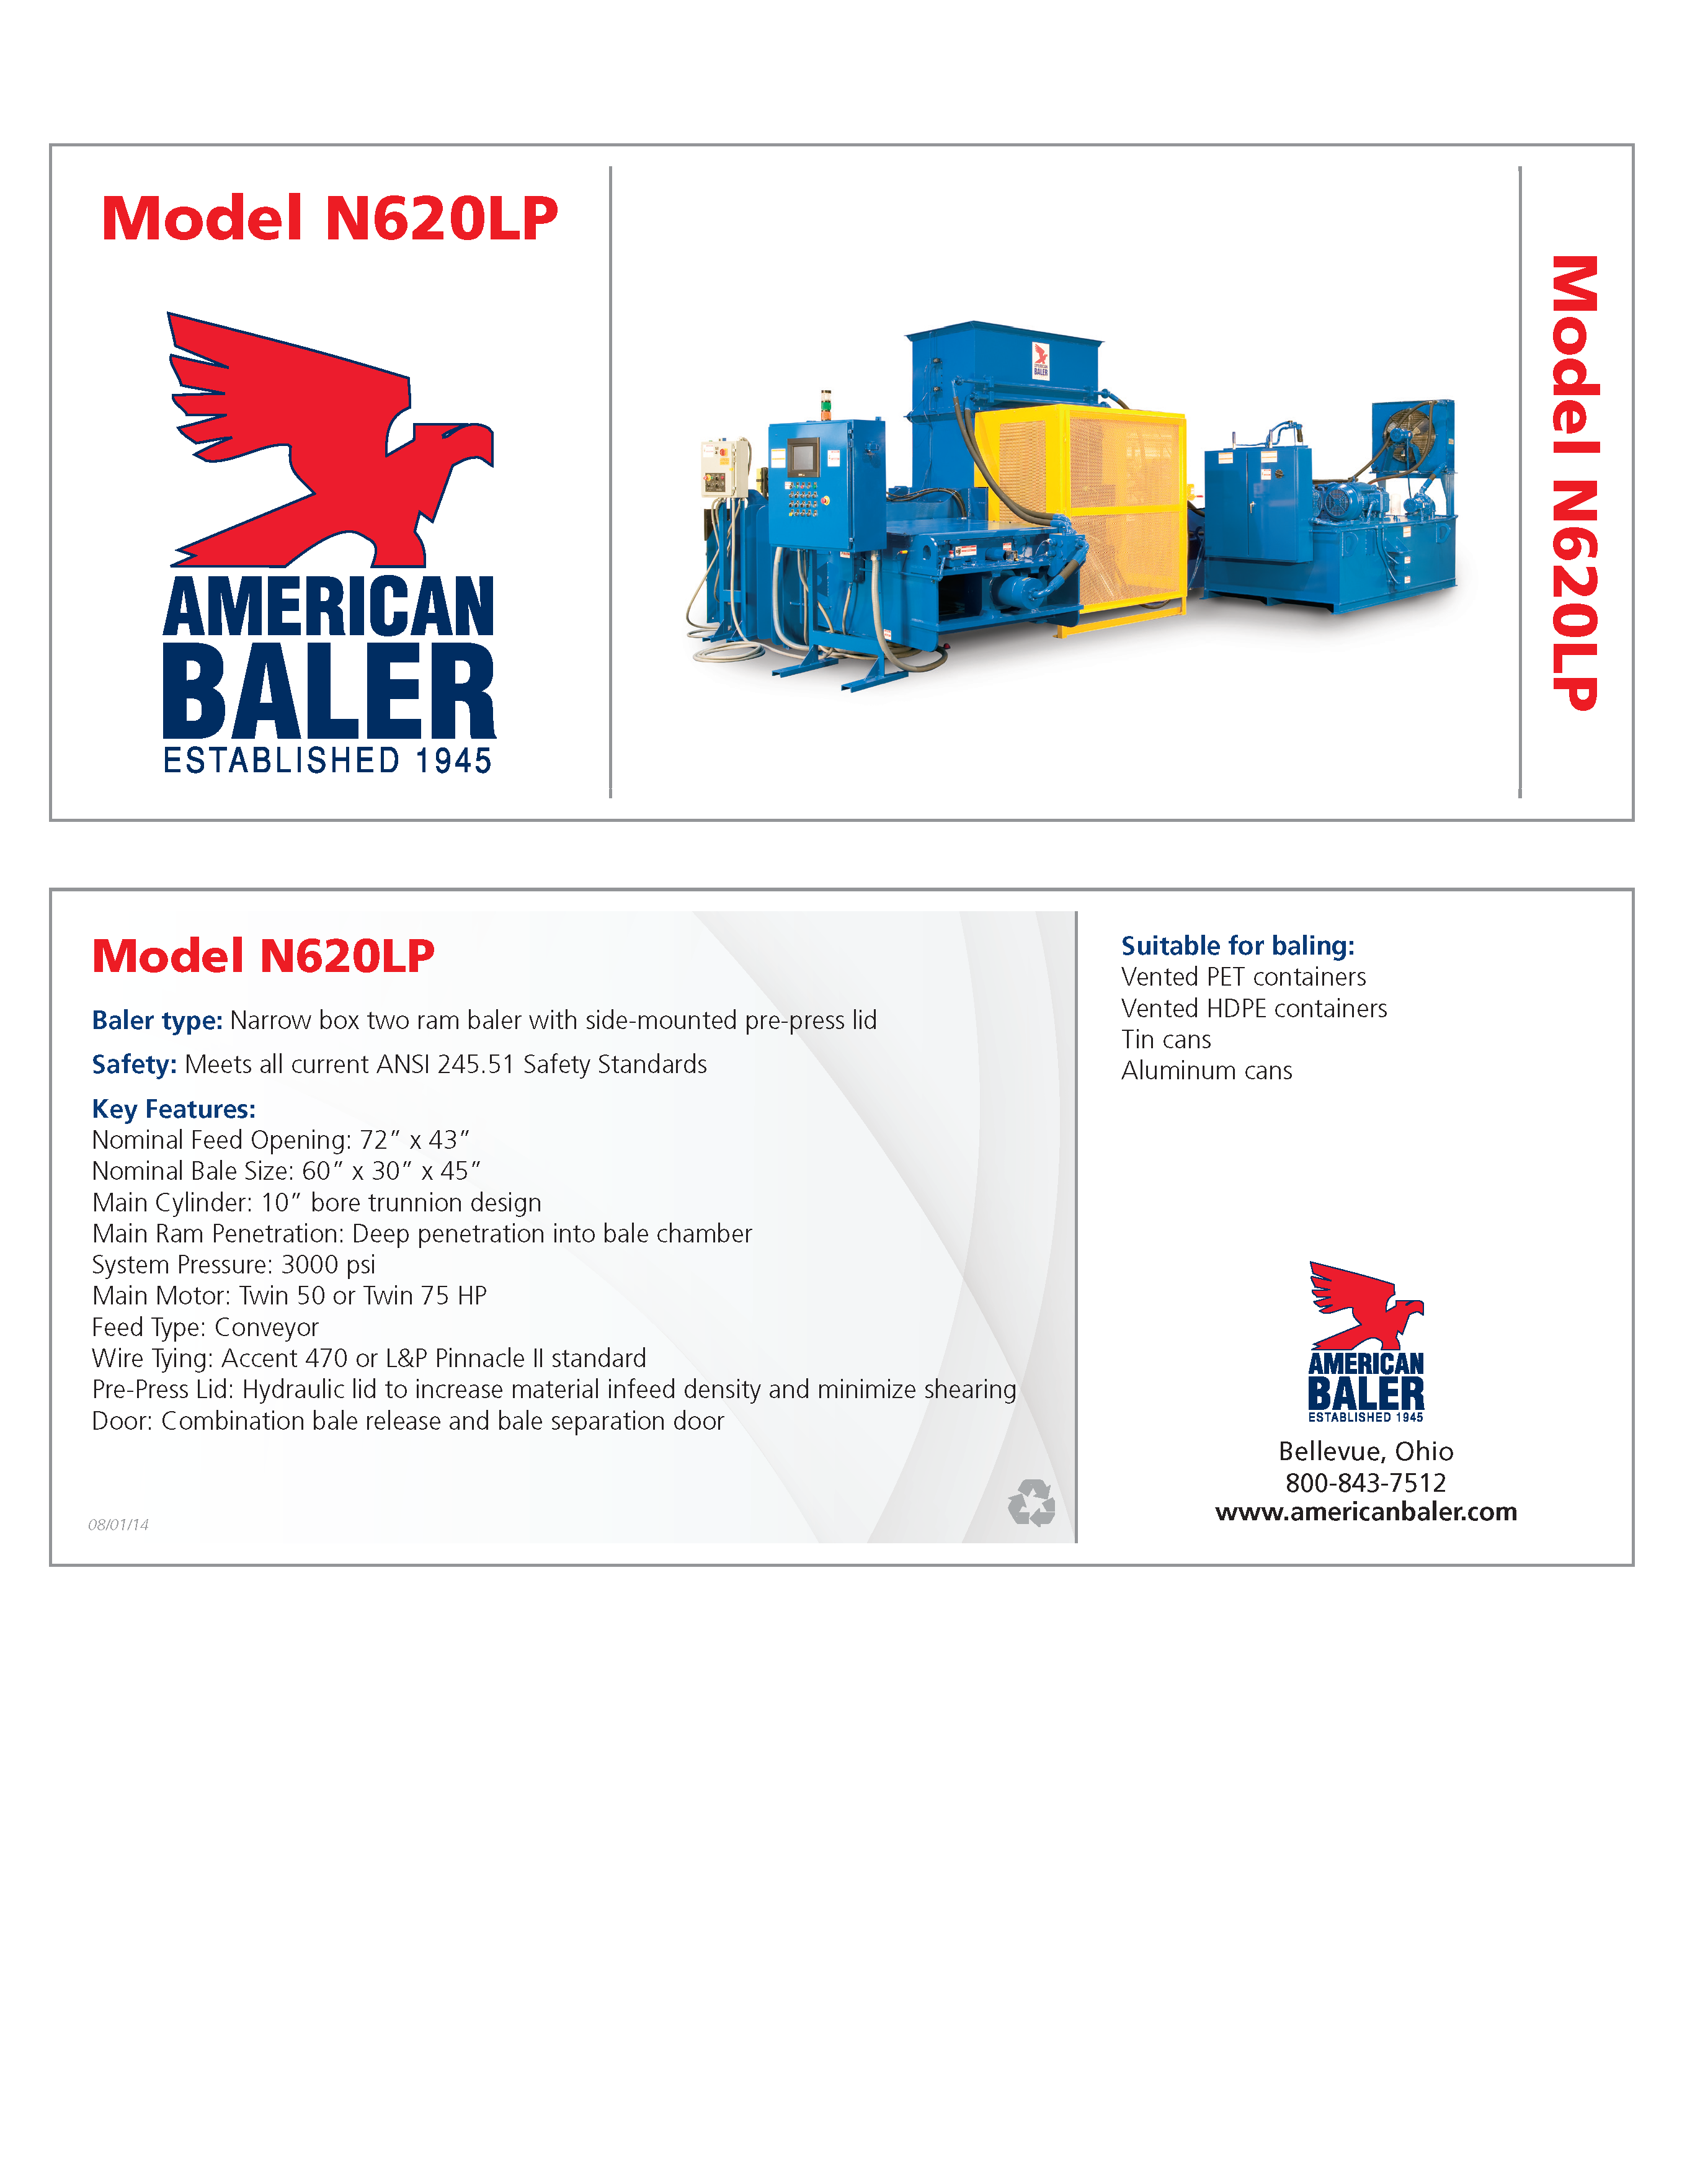 Conozca más acerca de la compactadora American Baler N620LP en el folleto. 